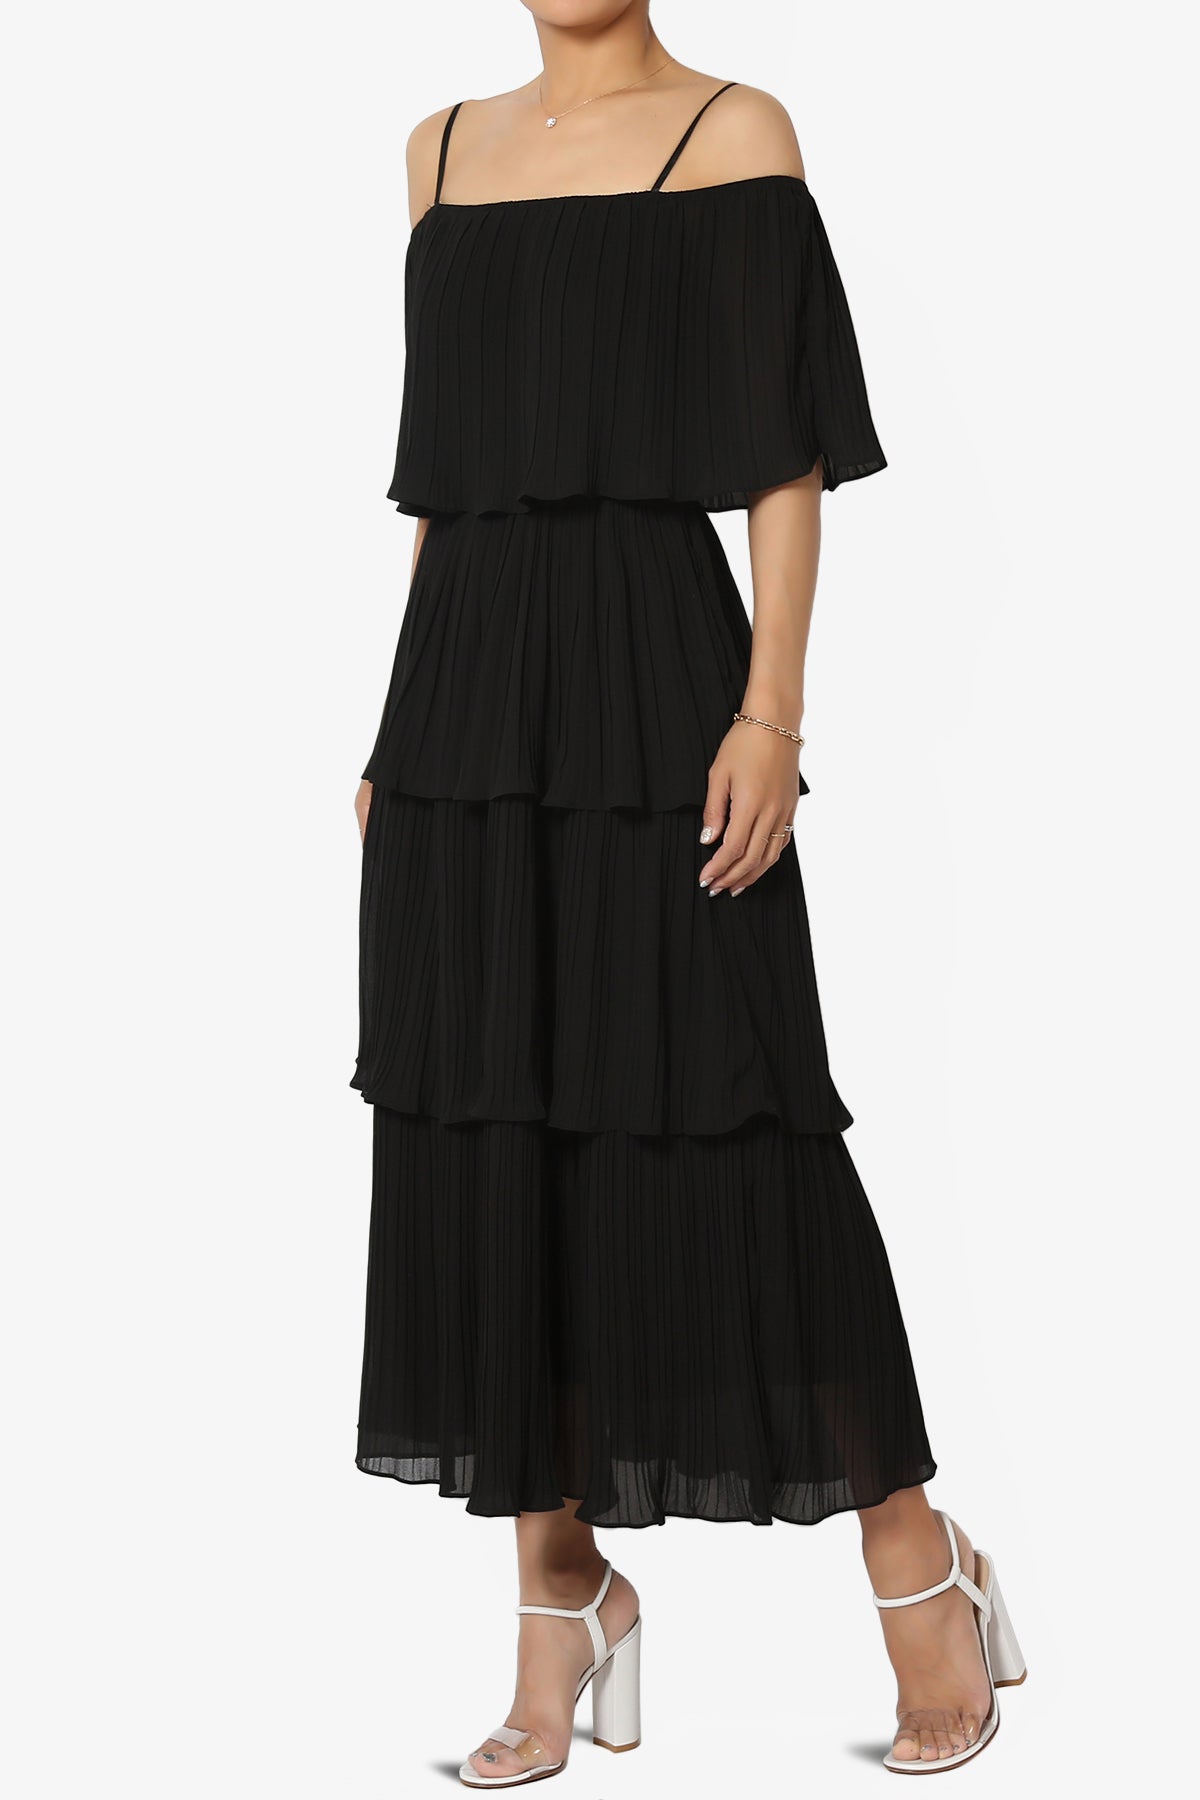 Kye Off Shoulder Tiered Dress in Black